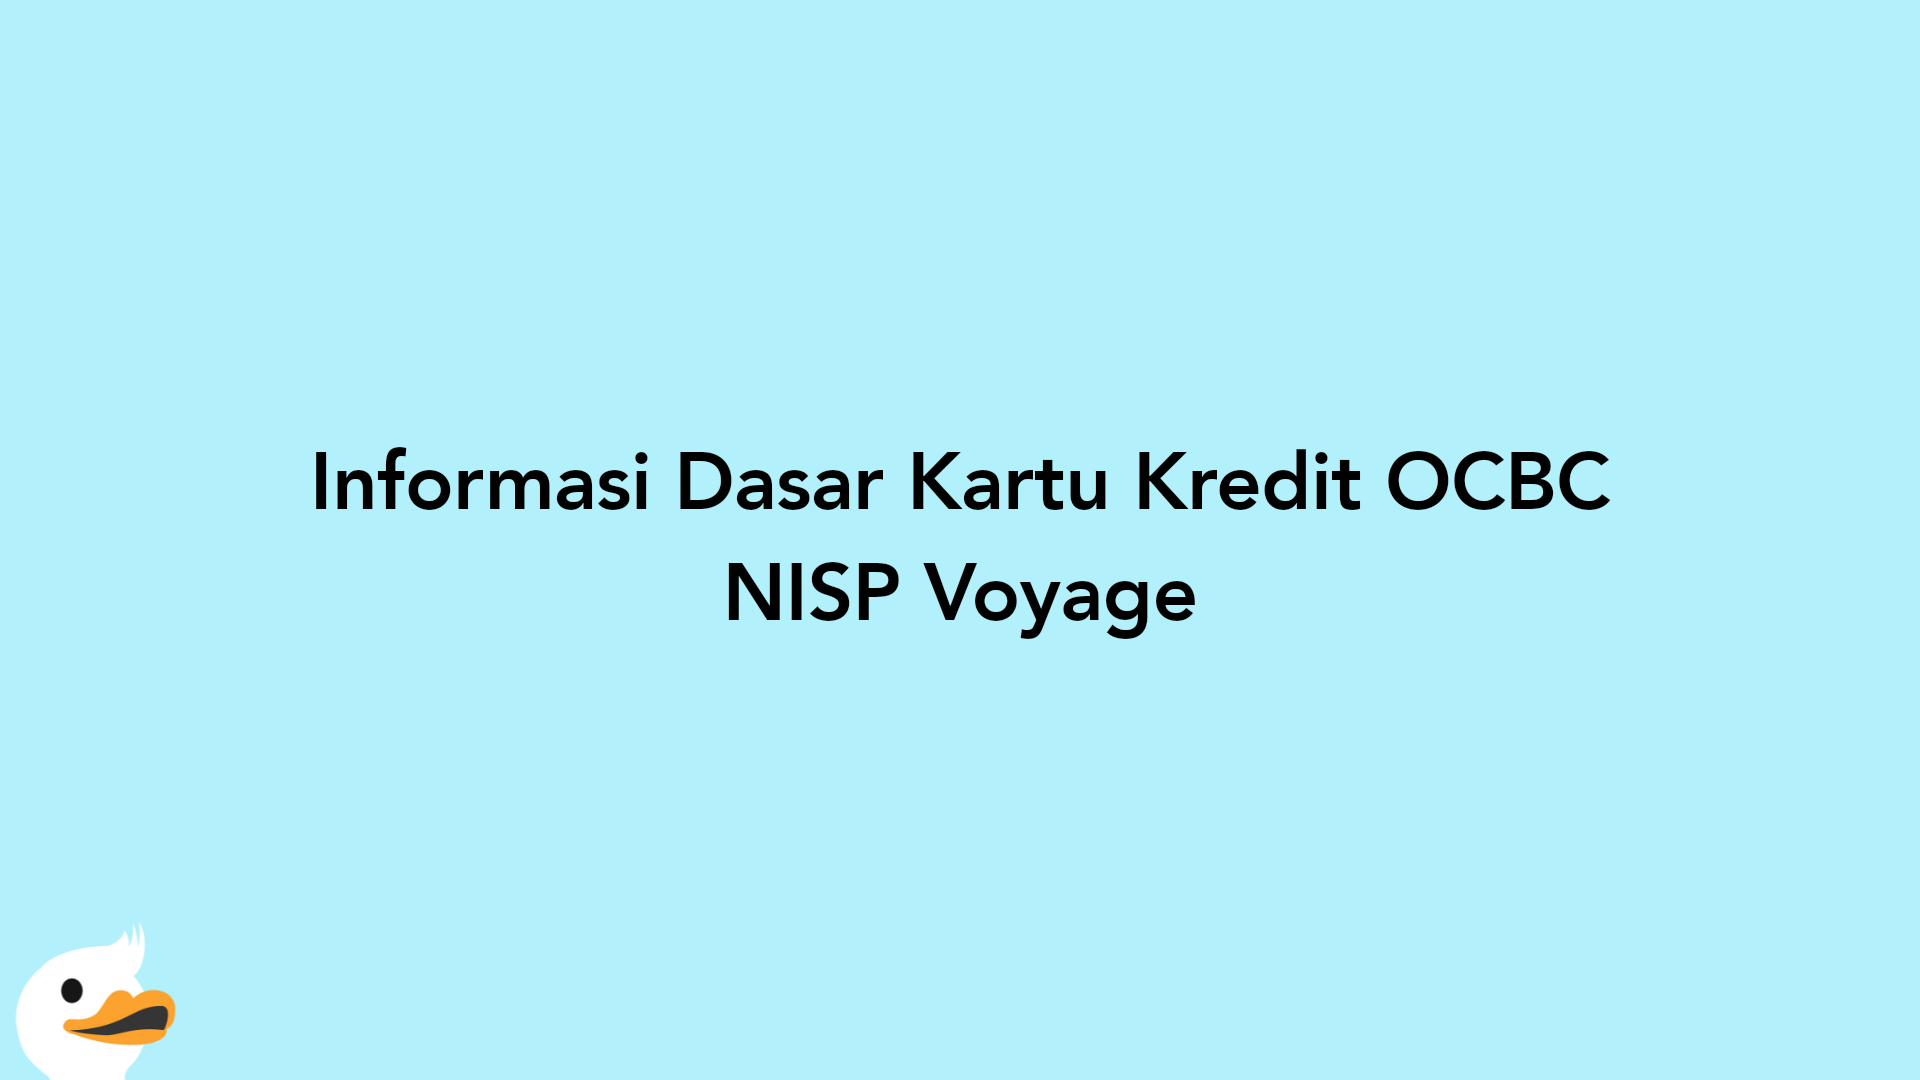 Informasi Dasar Kartu Kredit OCBC NISP Voyage